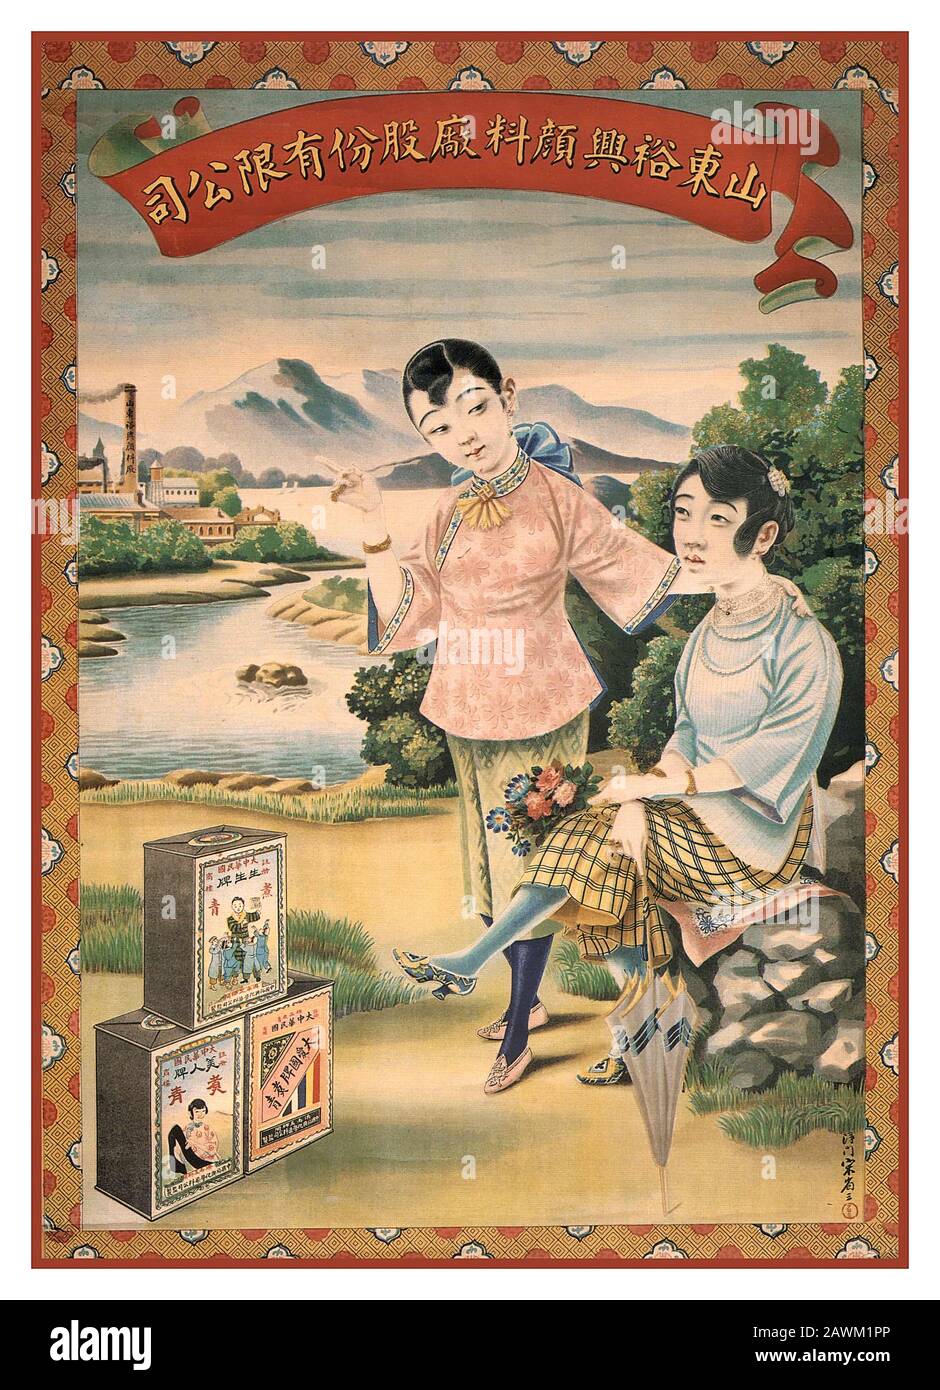 Chinesische Schanghai-Poster chinesische Werbekunst von Yu Xing Dye Factory der Provinz Shandong. Chinesische Plakate In Shanghai. Stockfoto